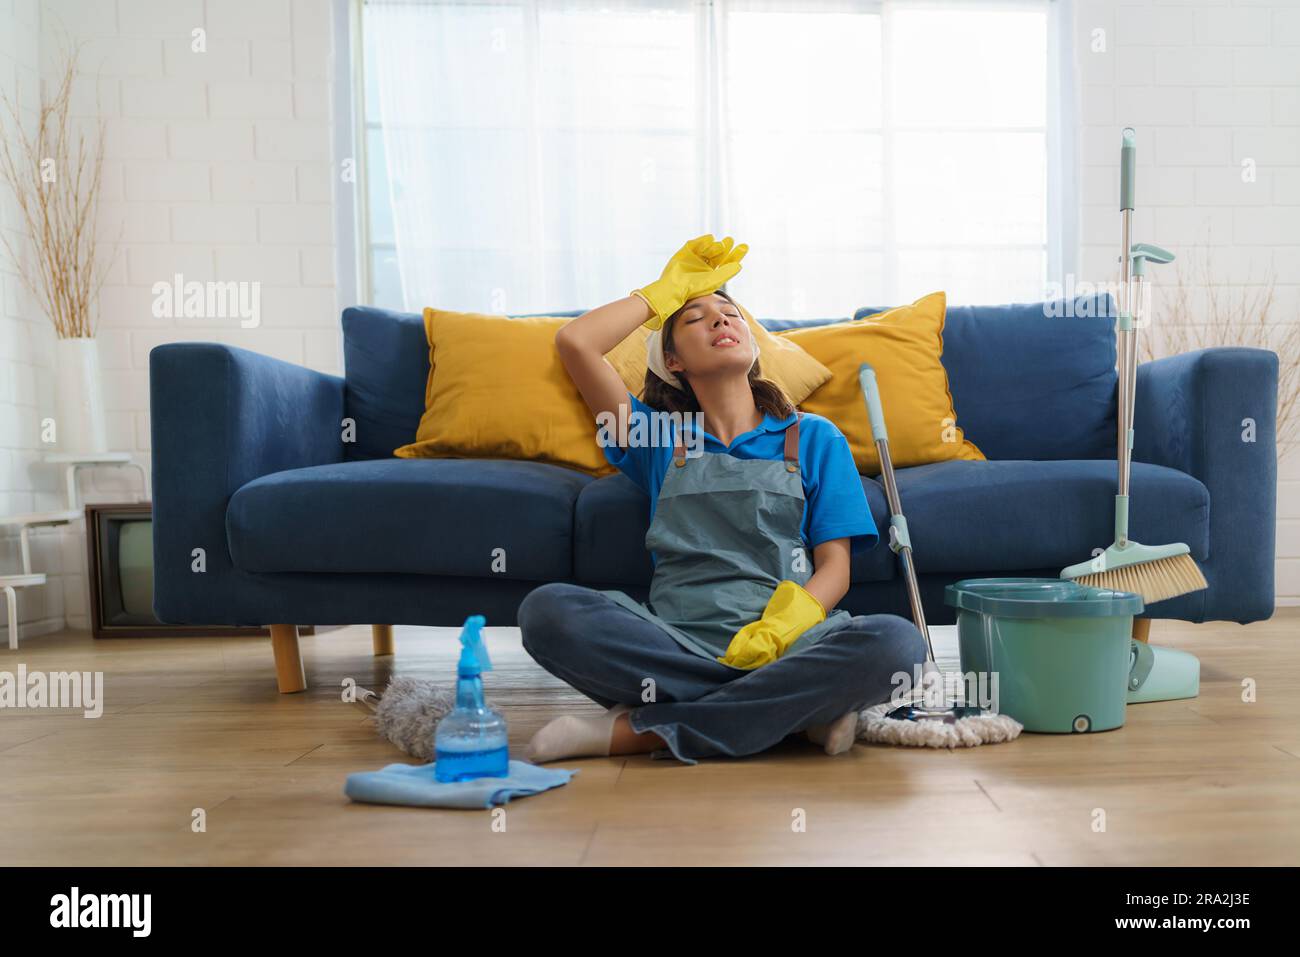 Une femme de ménage asiatique épuisée lutte avec la fatigue tout en nettoyant la maison, présentant les défis et le travail difficile derrière la maison Banque D'Images